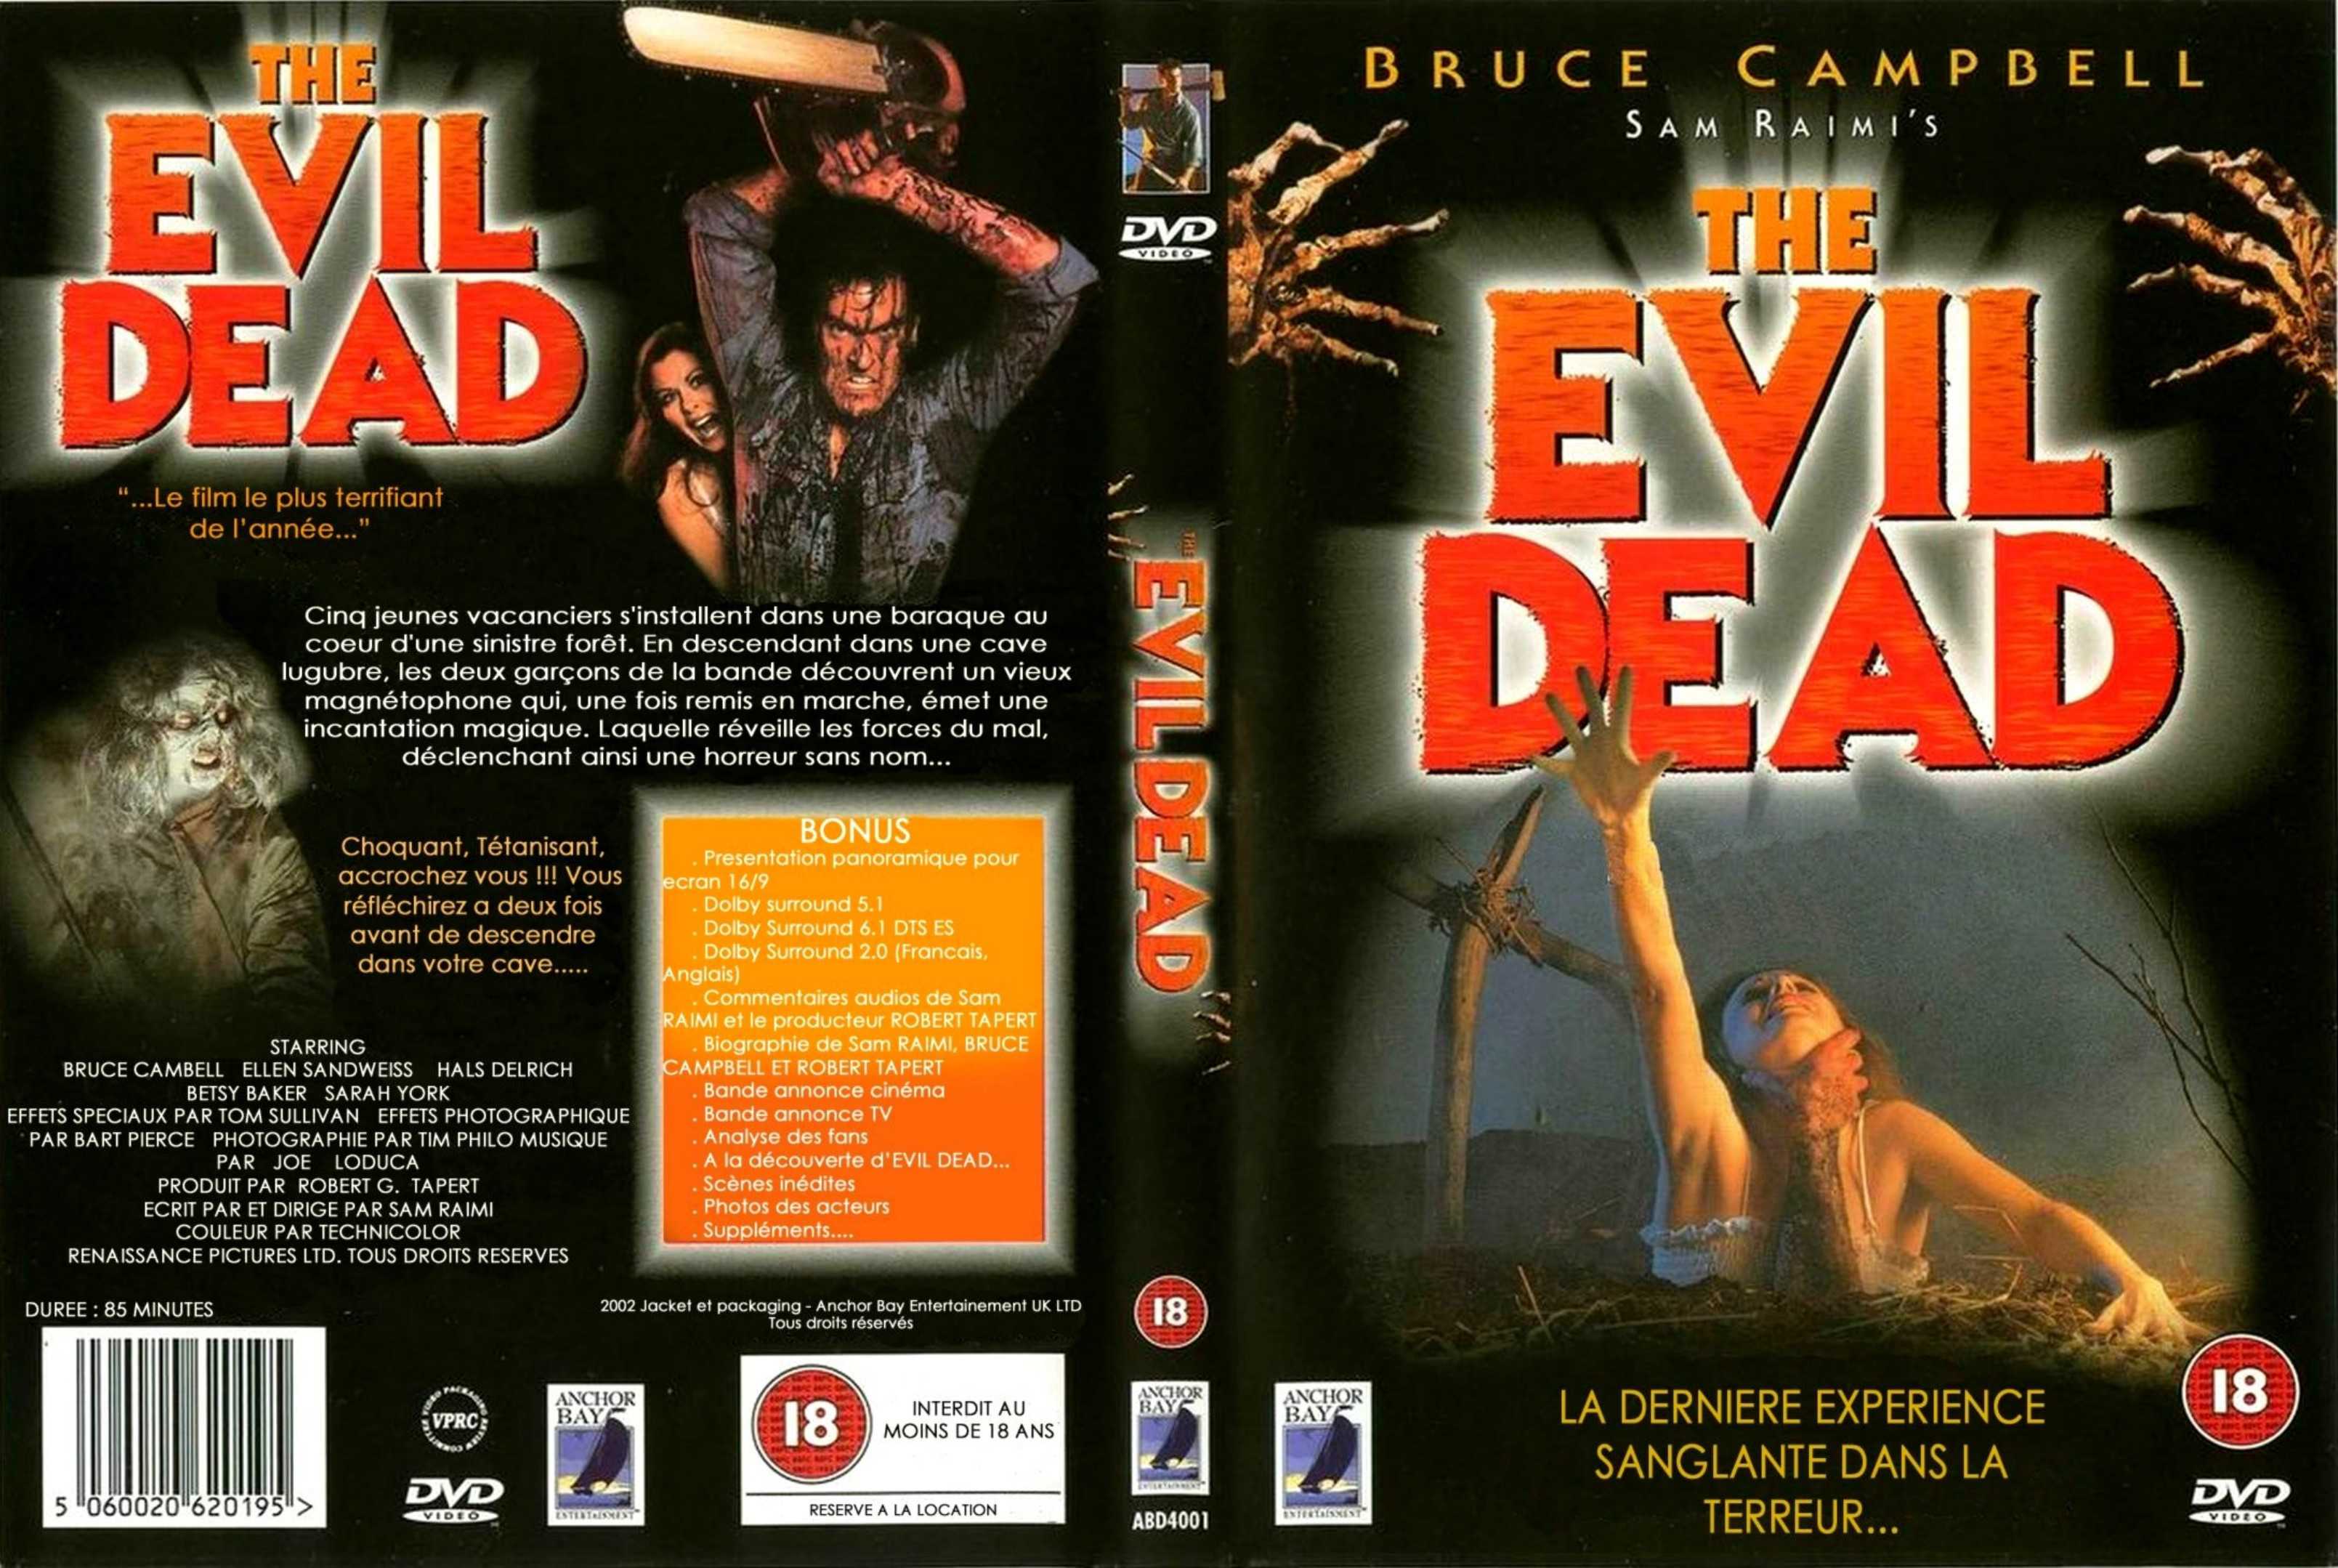 Jaquette DVD Evil dead v3